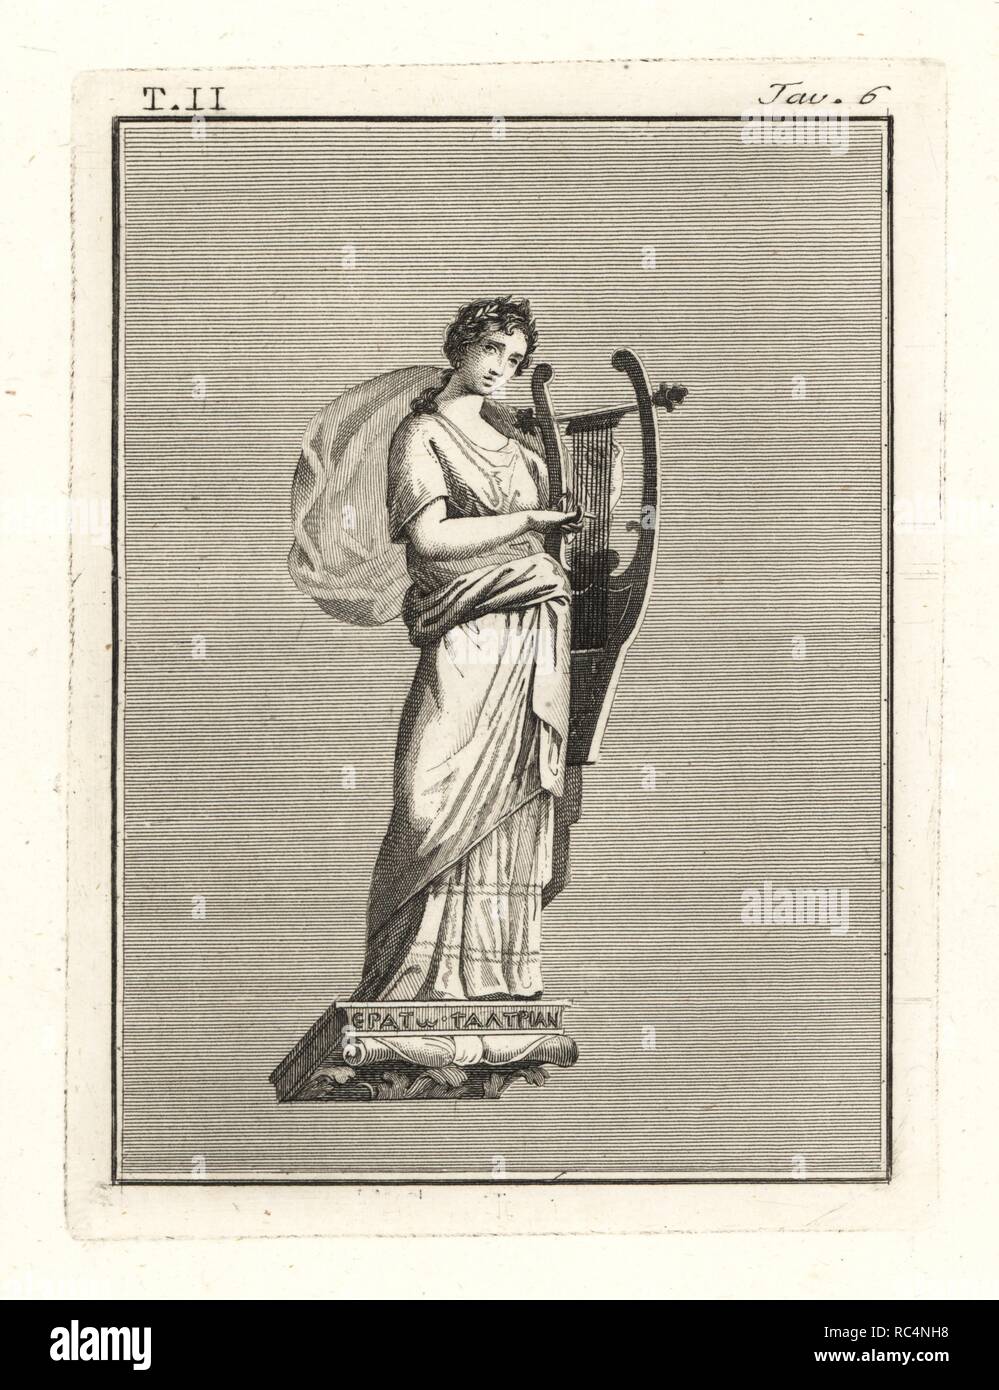 Erato, musa della poesia lirica, tenendo una lira (cithara). Incisione su rame di Tommaso Piroli dalla sua Antichità di Ercolano (Antichita di Ercolano), Roma, 1789. Foto Stock